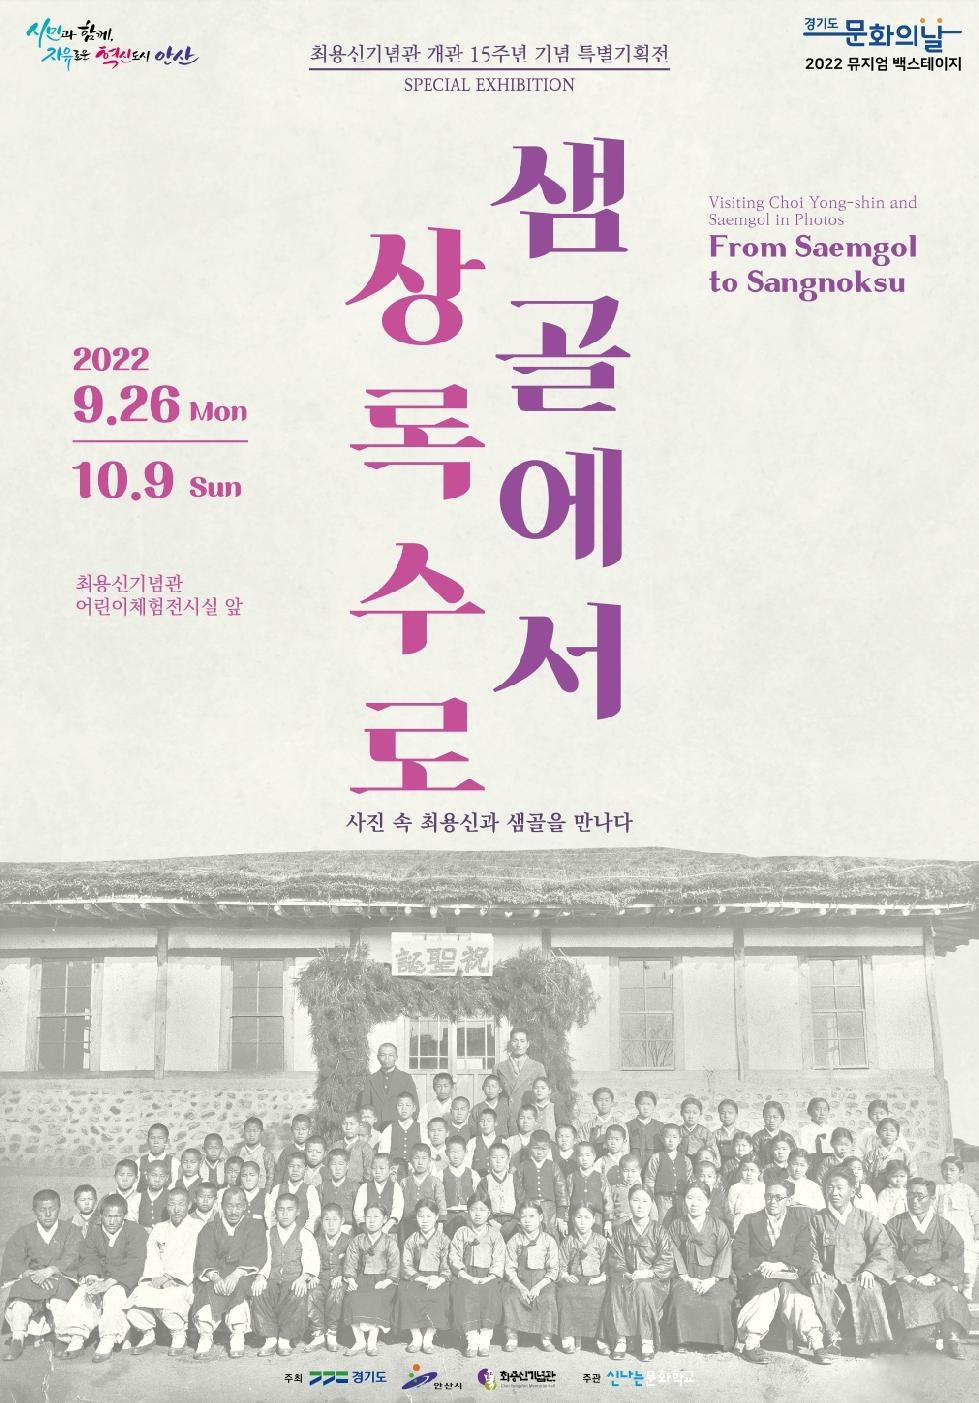 안산시 최용신기념관, 개관 15주년 기념 특별기획전‘샘골에서 상록수로’개최